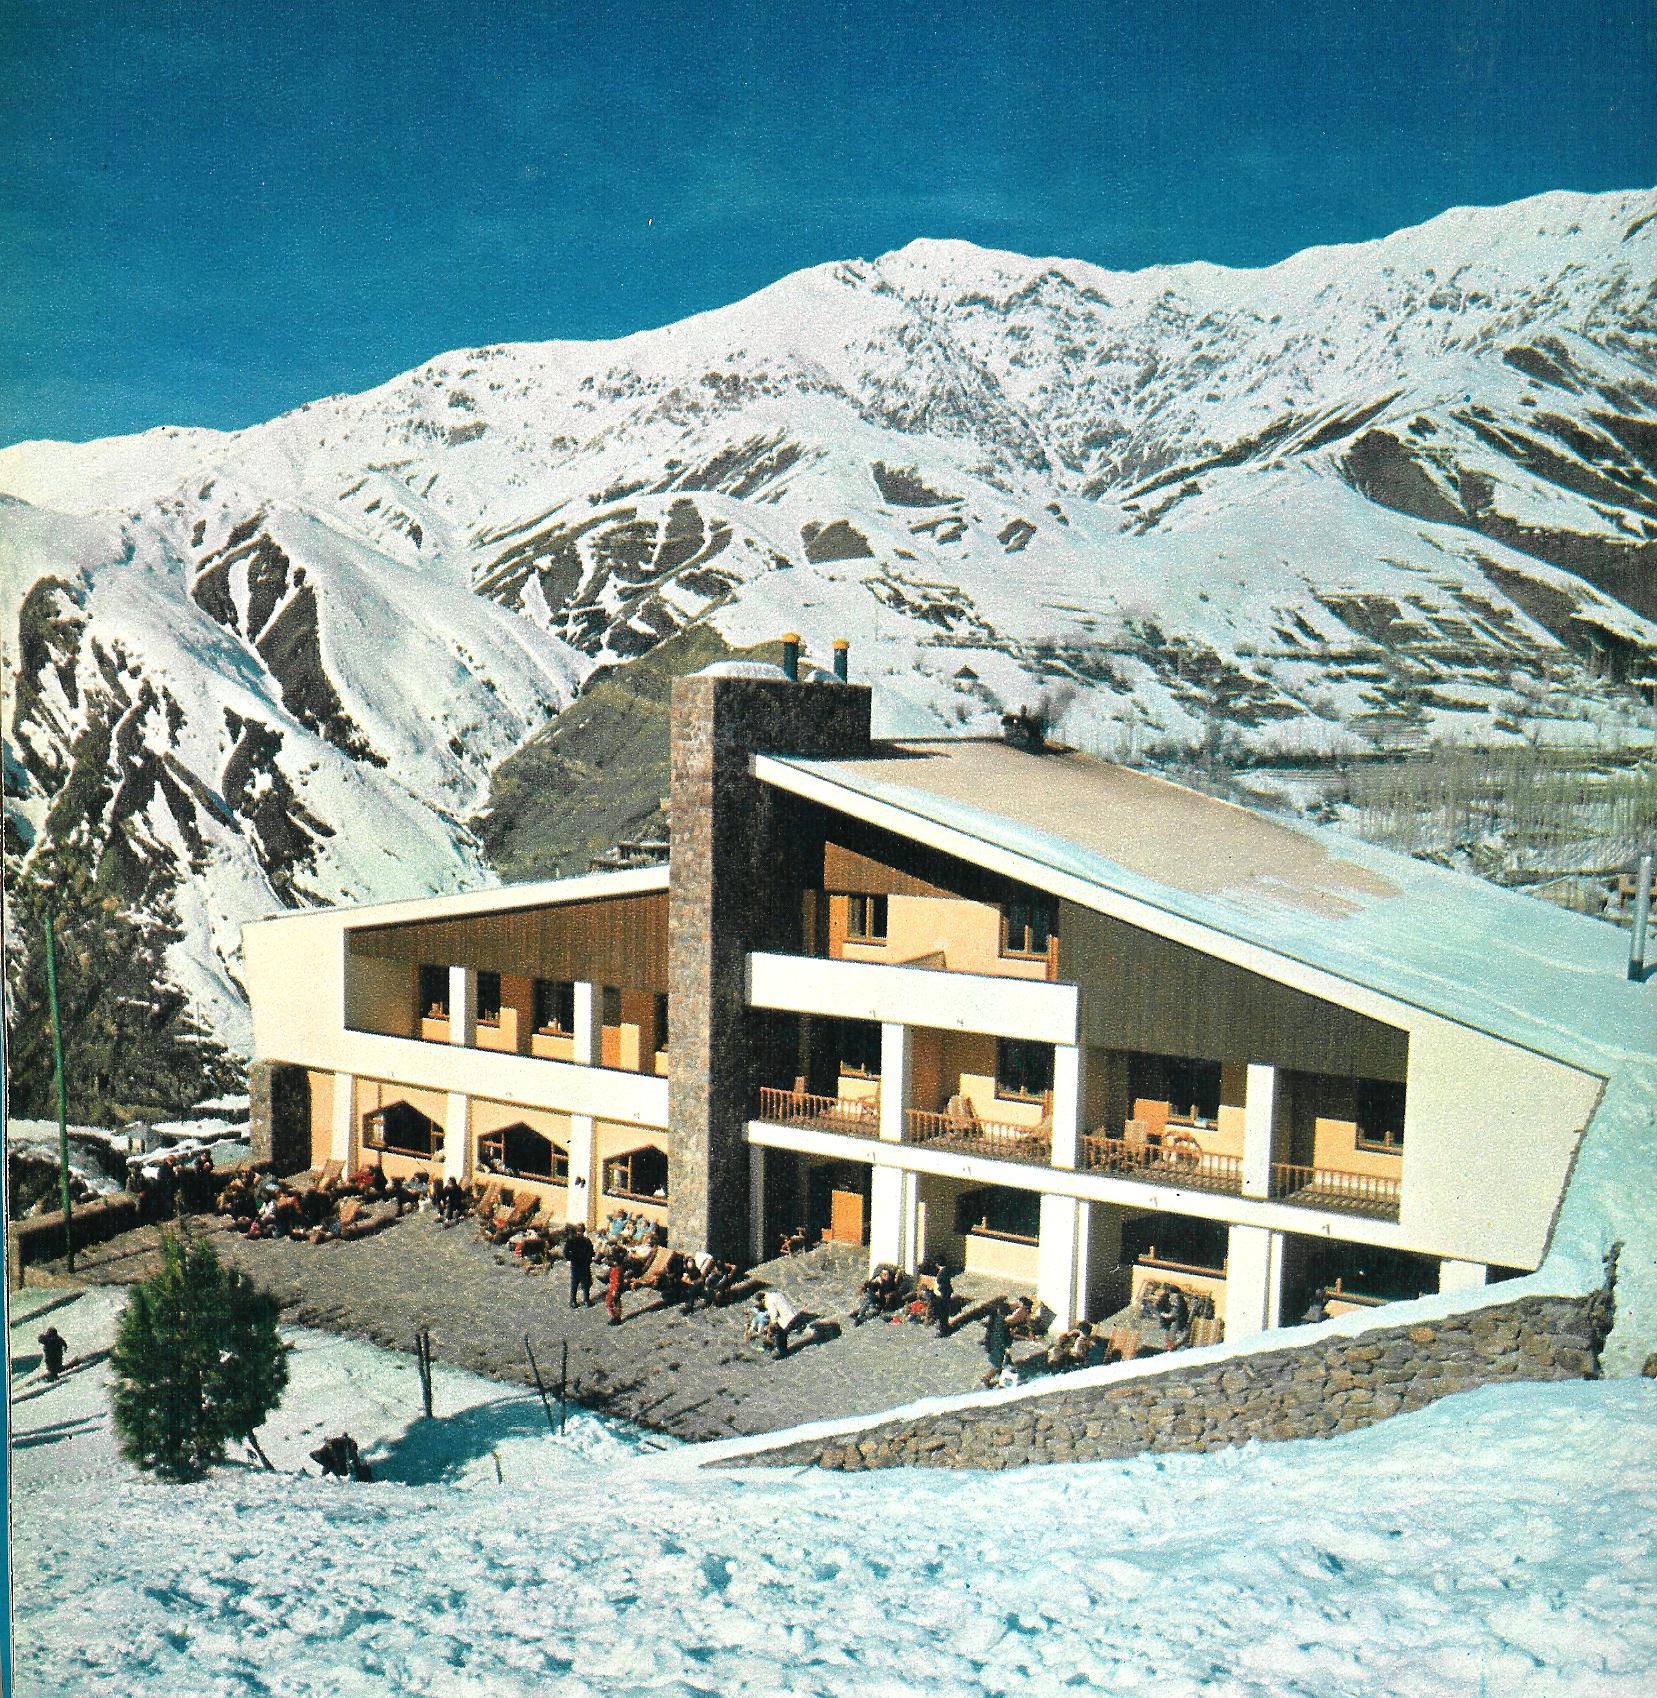 Throwback Thursday: Shemshak Ski Resort near Tehran, Iran, 1971